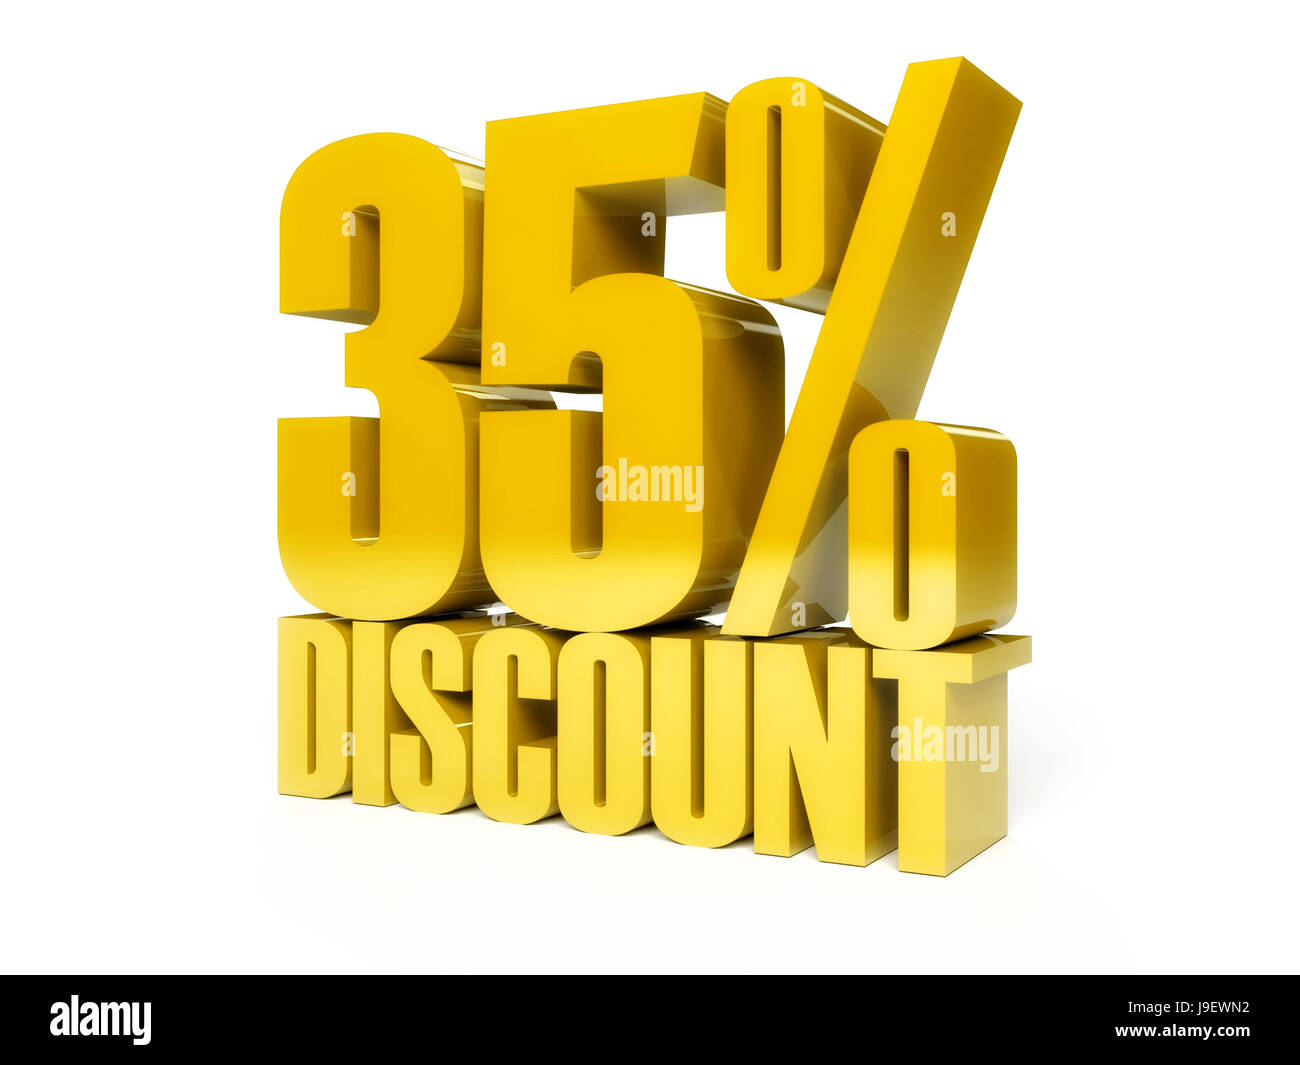 35-percent-discount-22452438-png